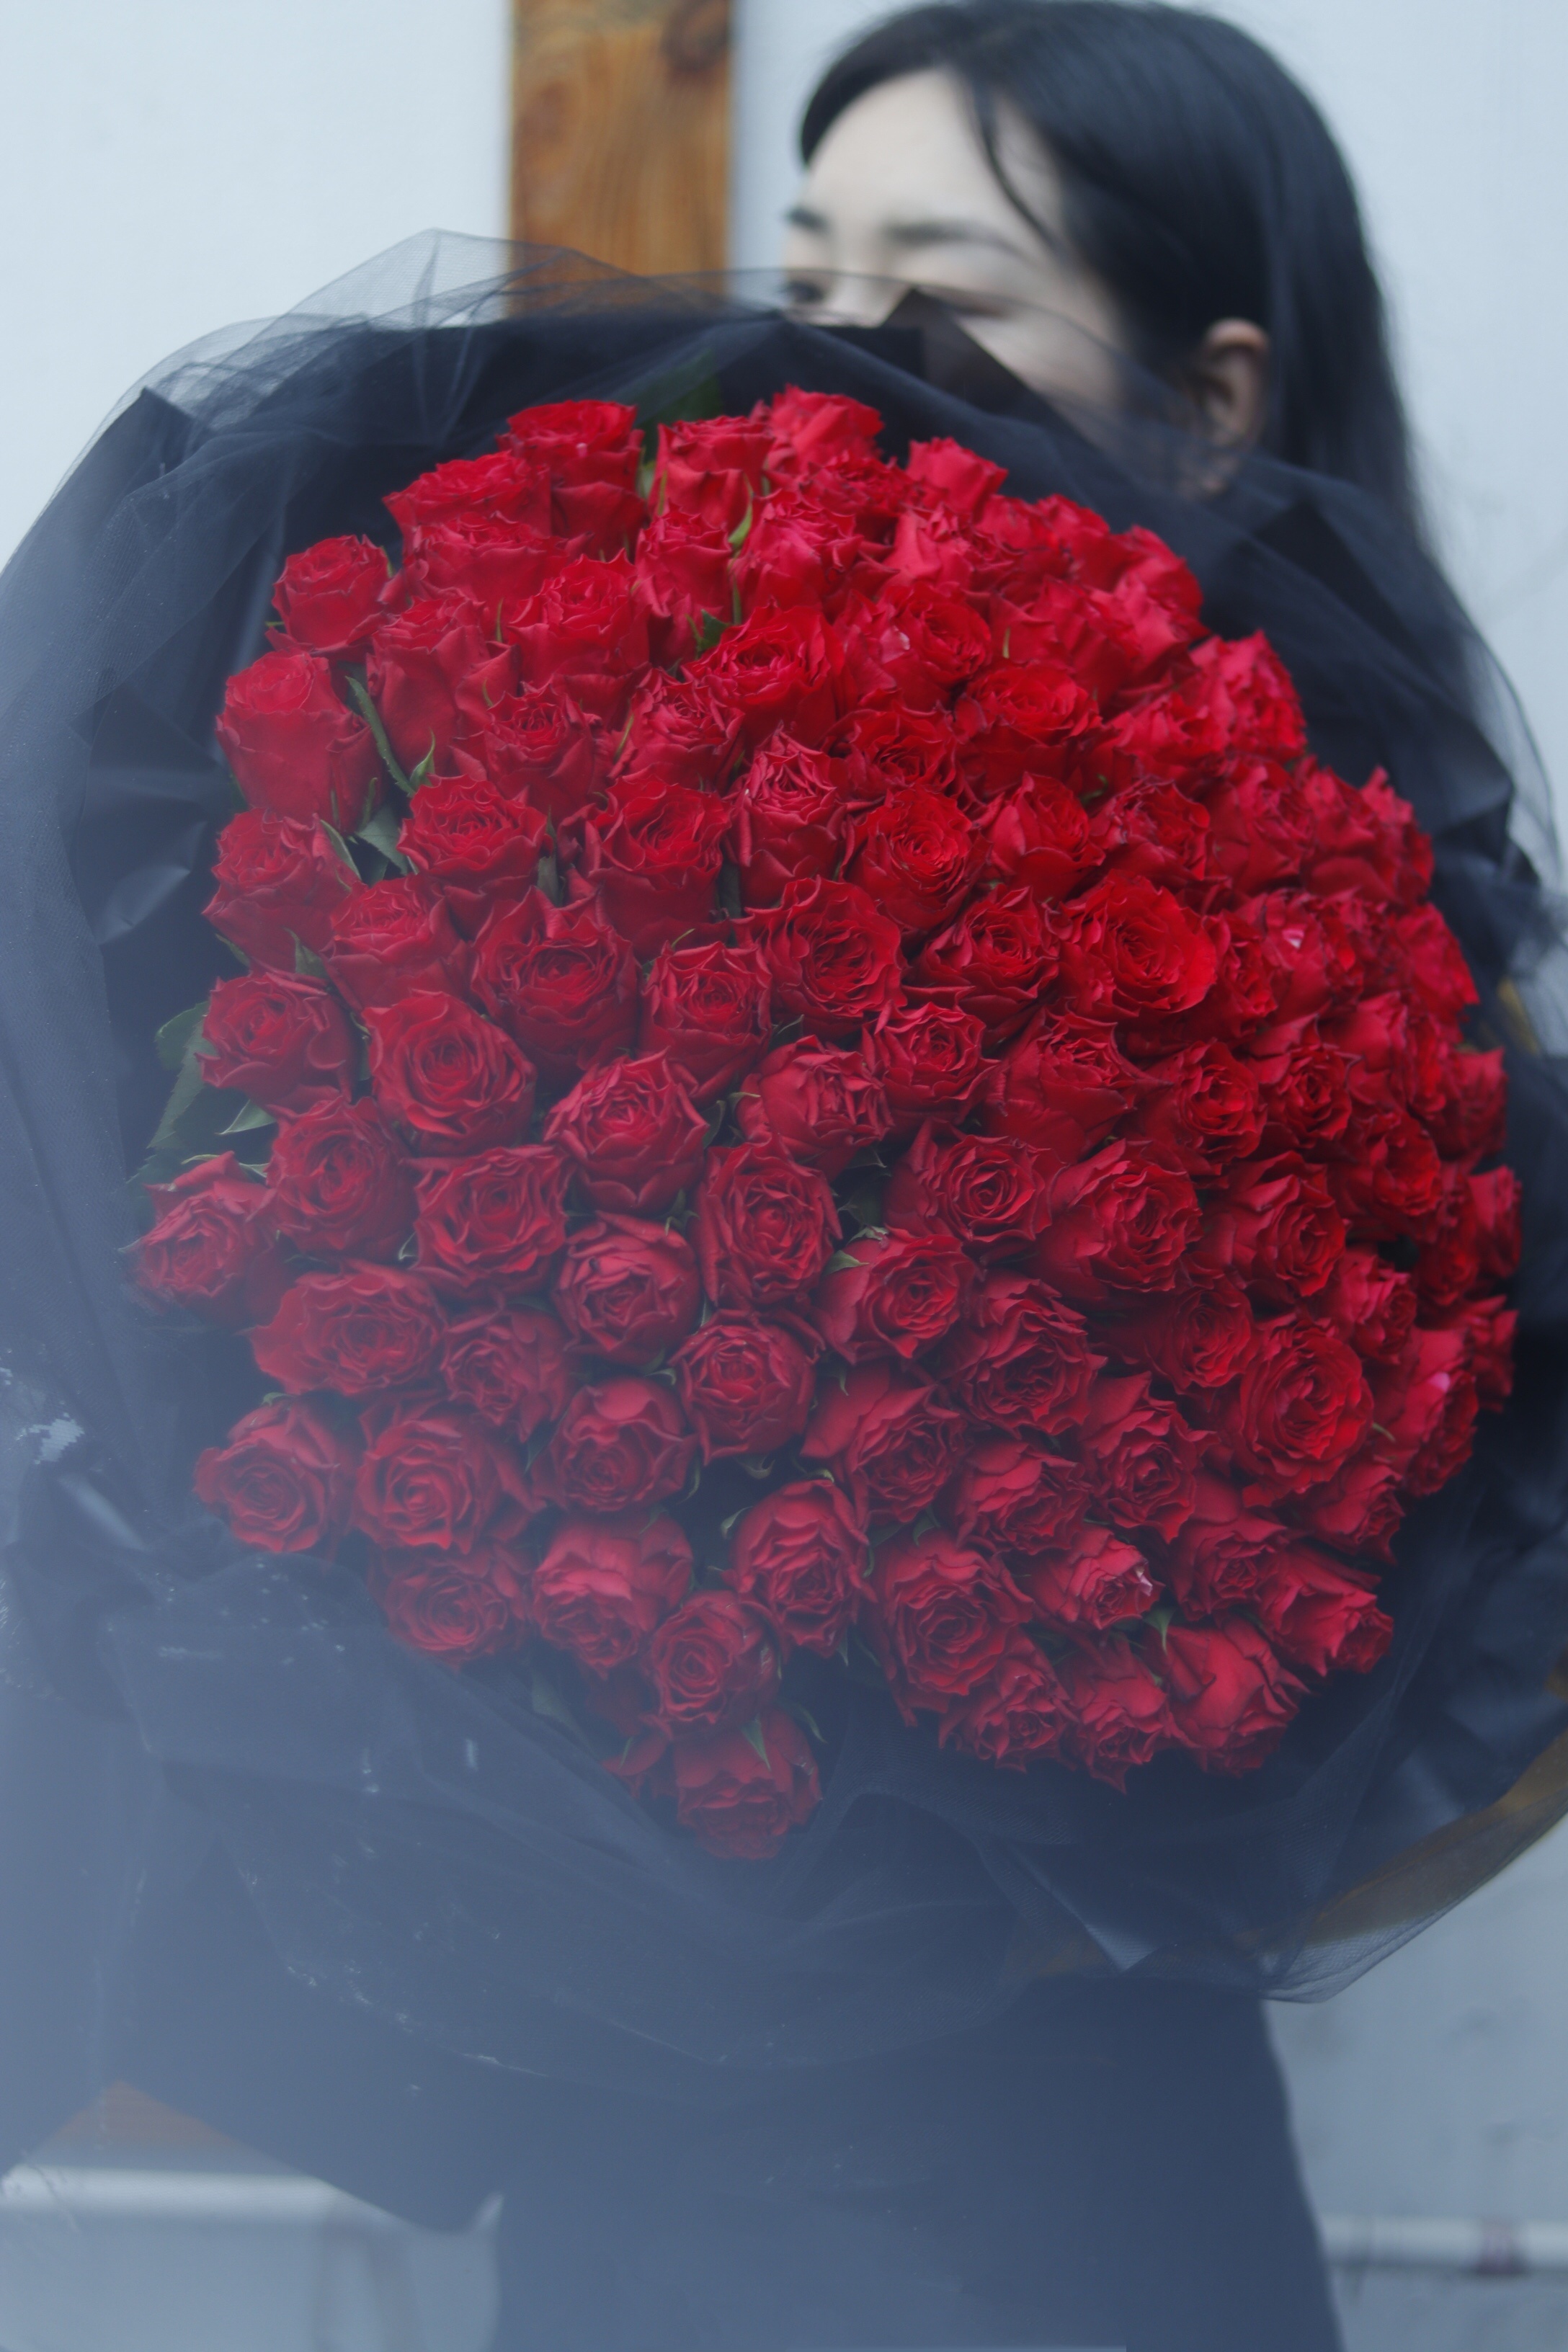 99朵玫瑰花束-美蓮網路花店，提供花束代送花等相關服務。